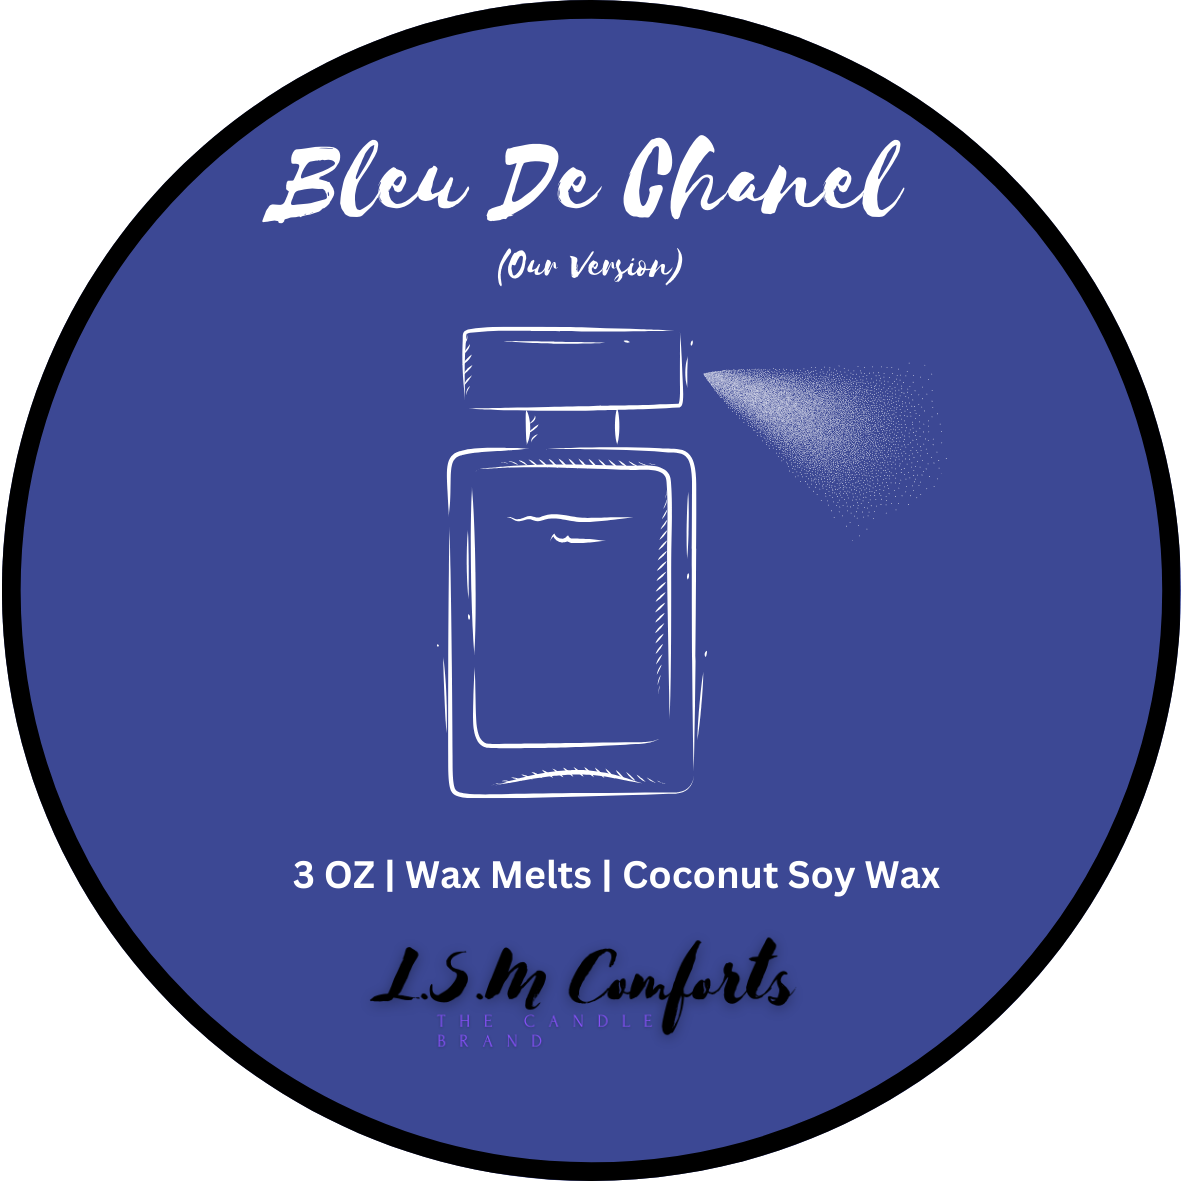 Bleu De Chanel (Our Version) Wax Melts